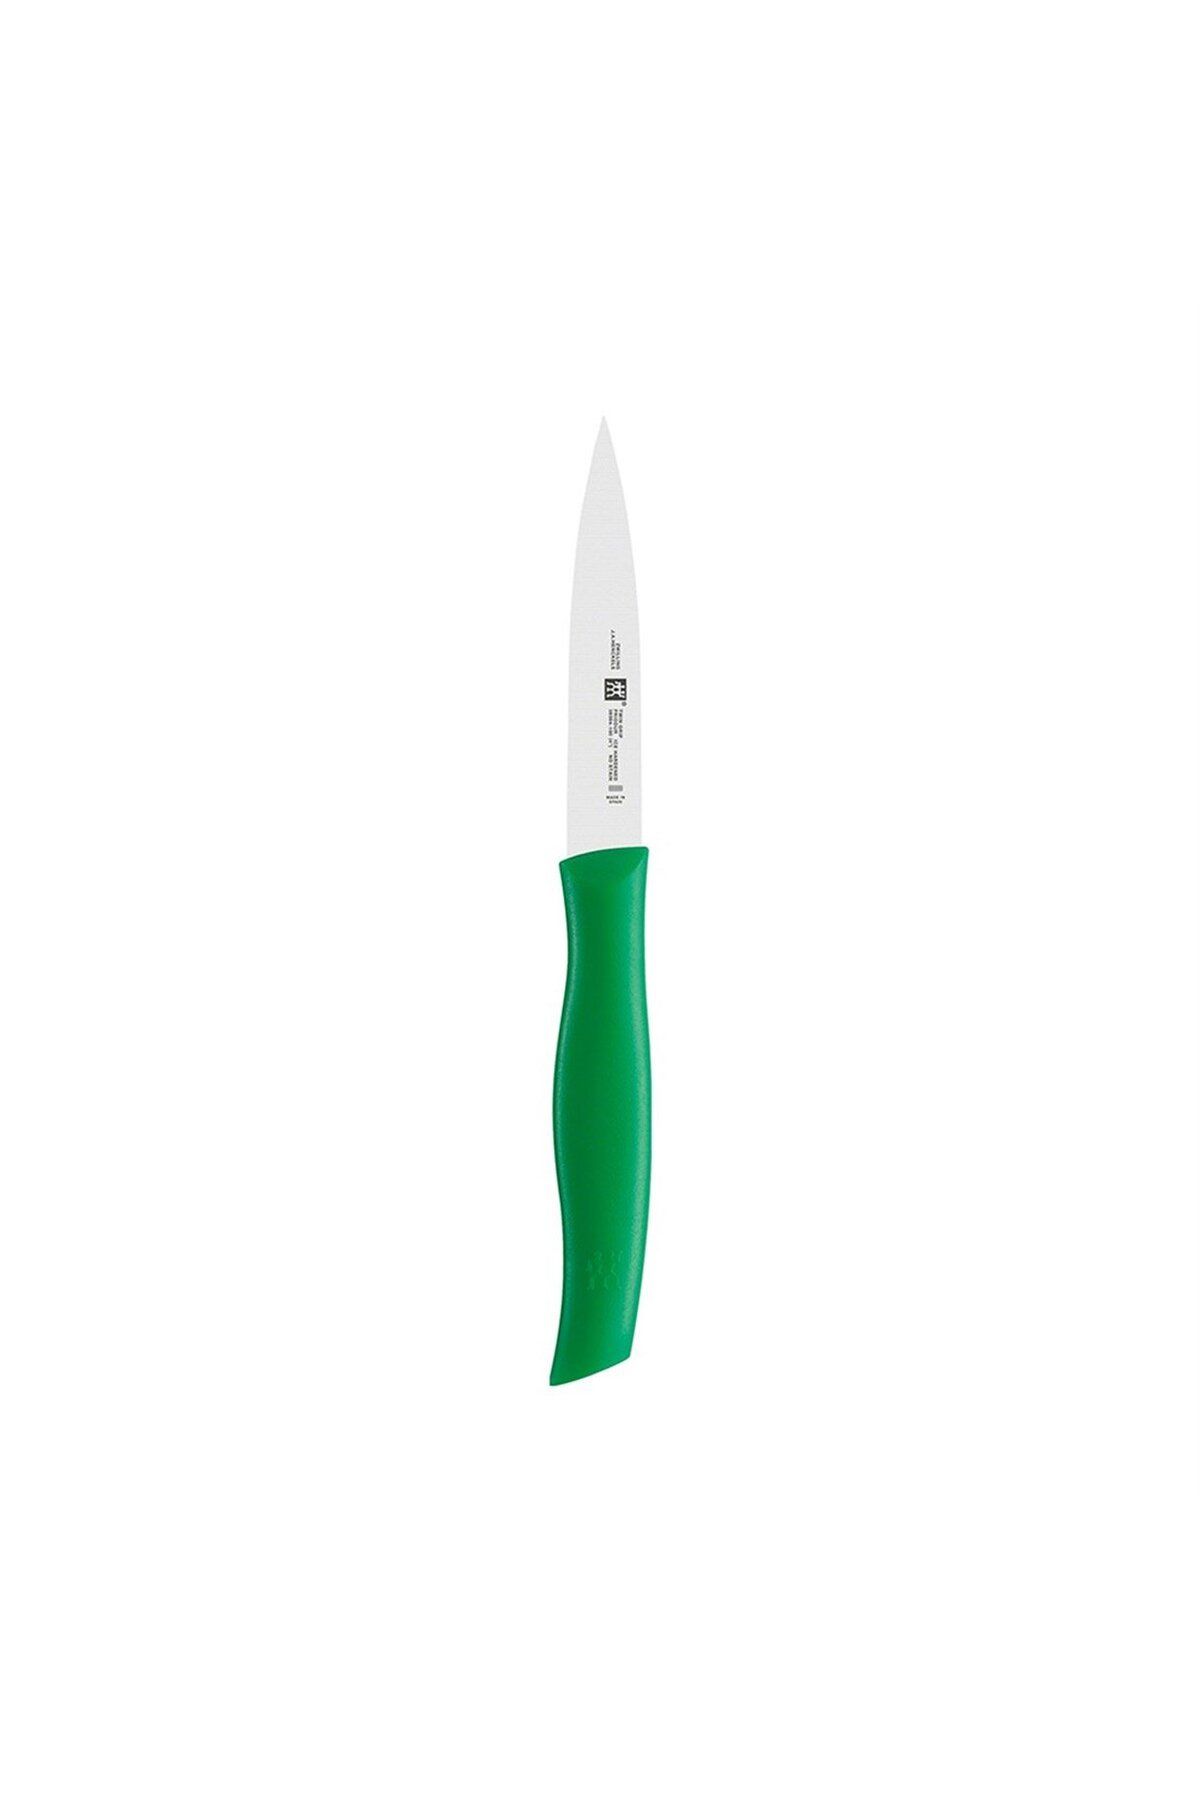 Zwilling 380941010 Soyma Bıçağı, Yeşil